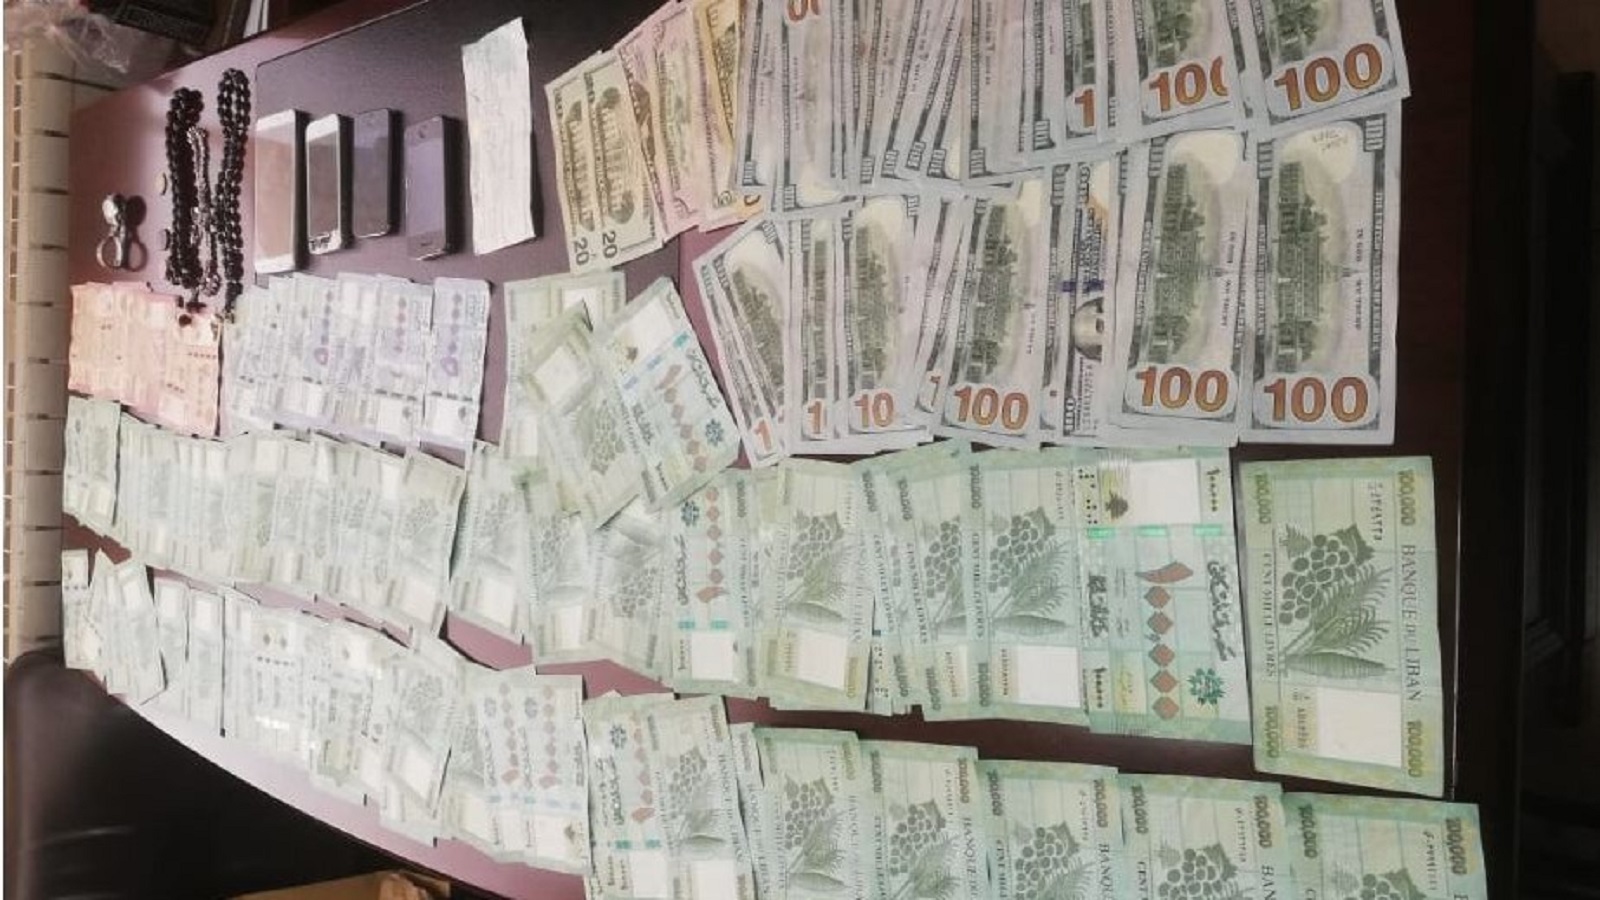 السرقات في لبنان تتزايد.. والأموال مخبأة في البيوت